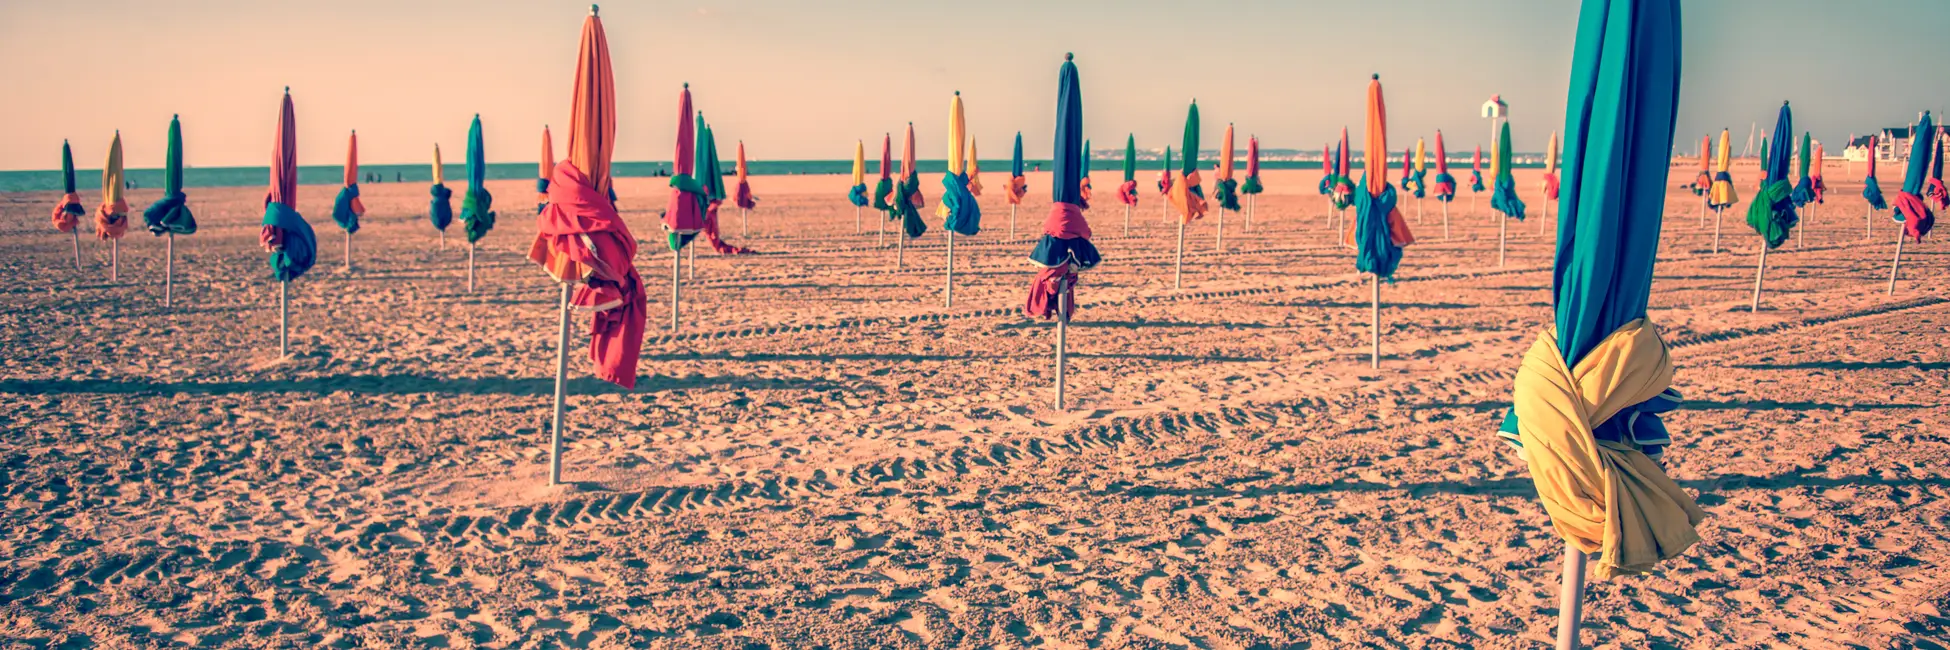 Les parasols sur la plage de Deauville